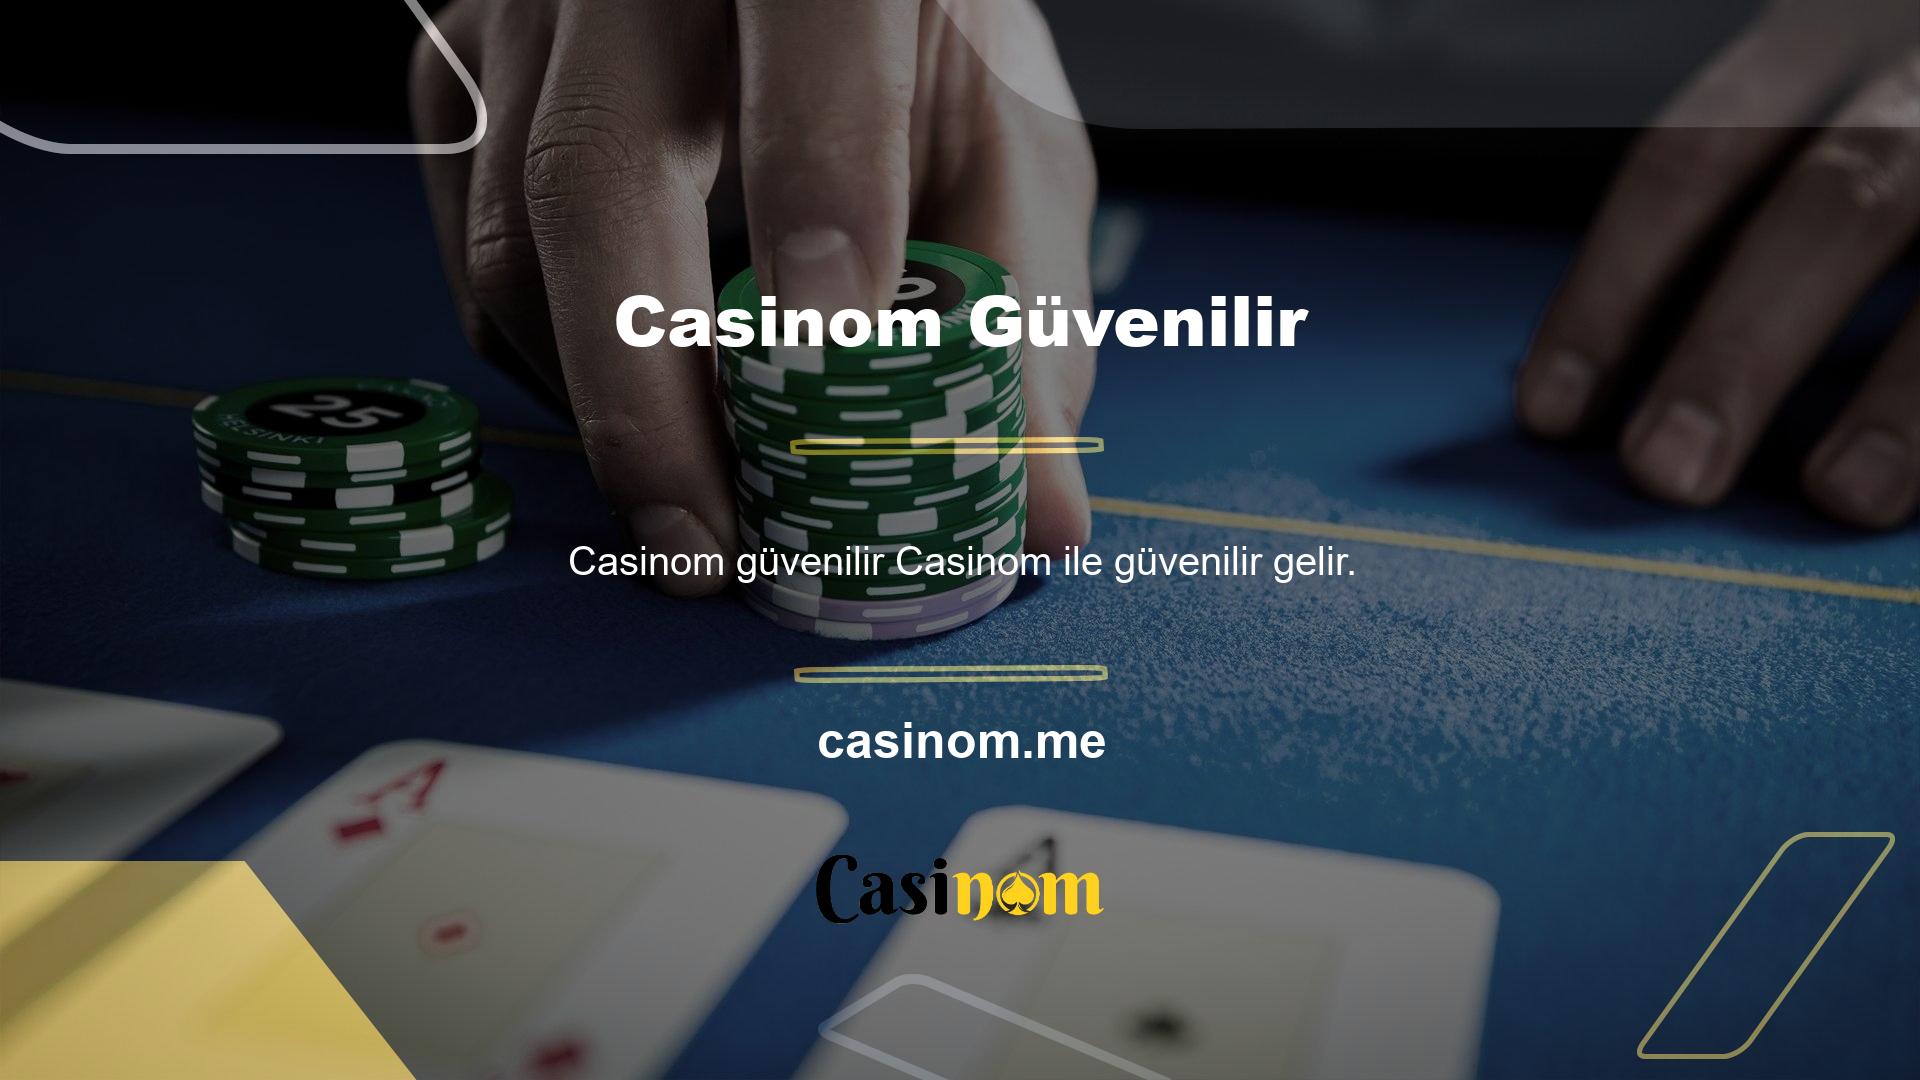 Casinom bahis sitesinde bahis oynayan kullanıcılar sağlam bir gelir elde etme şansına sahiptir